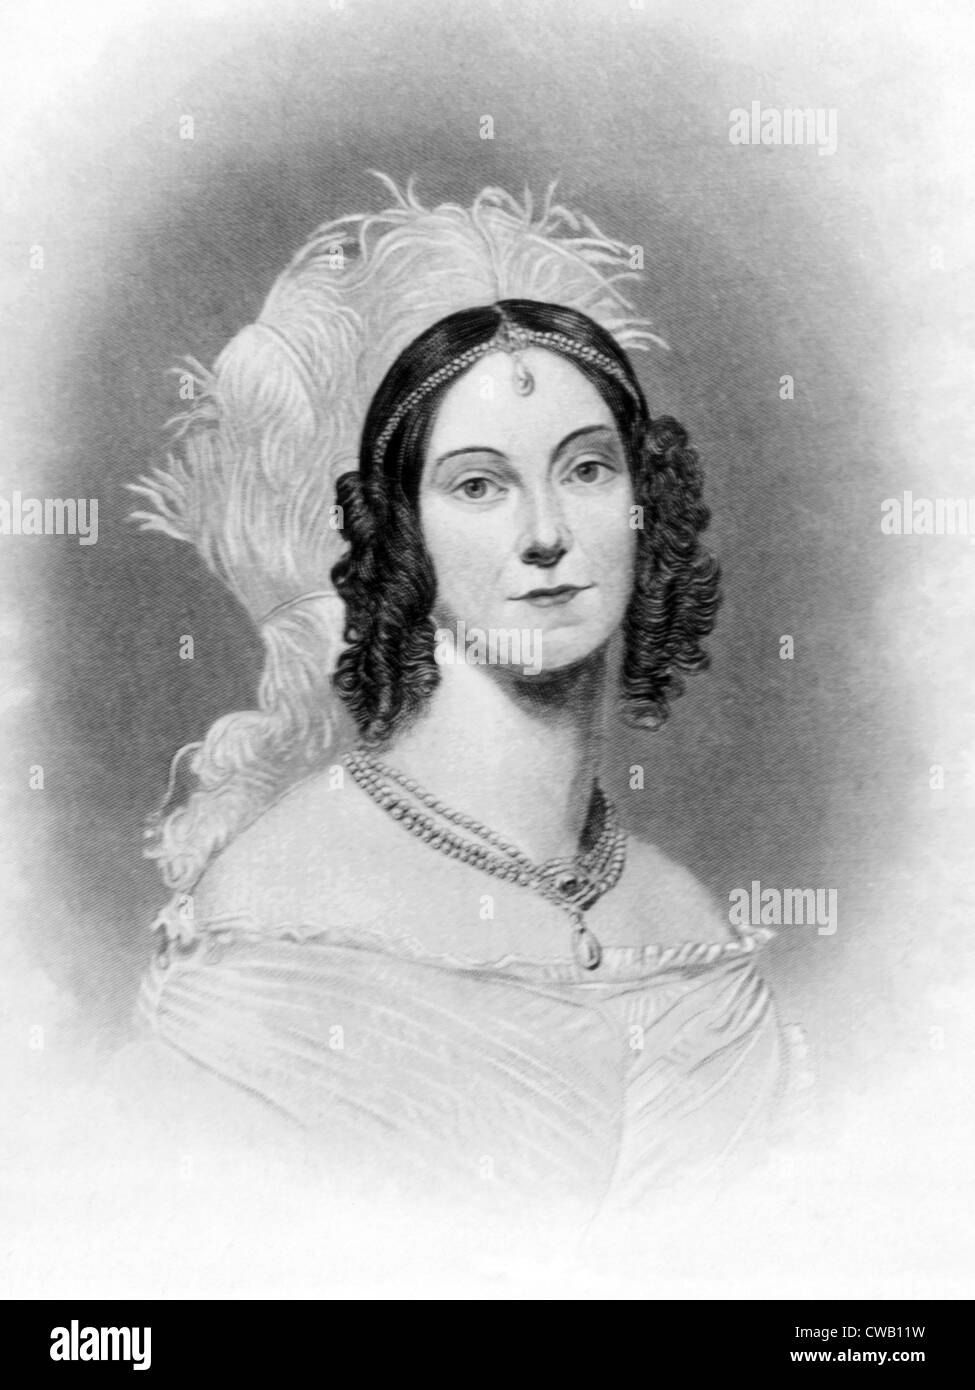 Angelica Van Buren (1816-1877), daughter-in-law of President Martin Van Buren, Lady of the President's House (1837-1841) Stock Photo